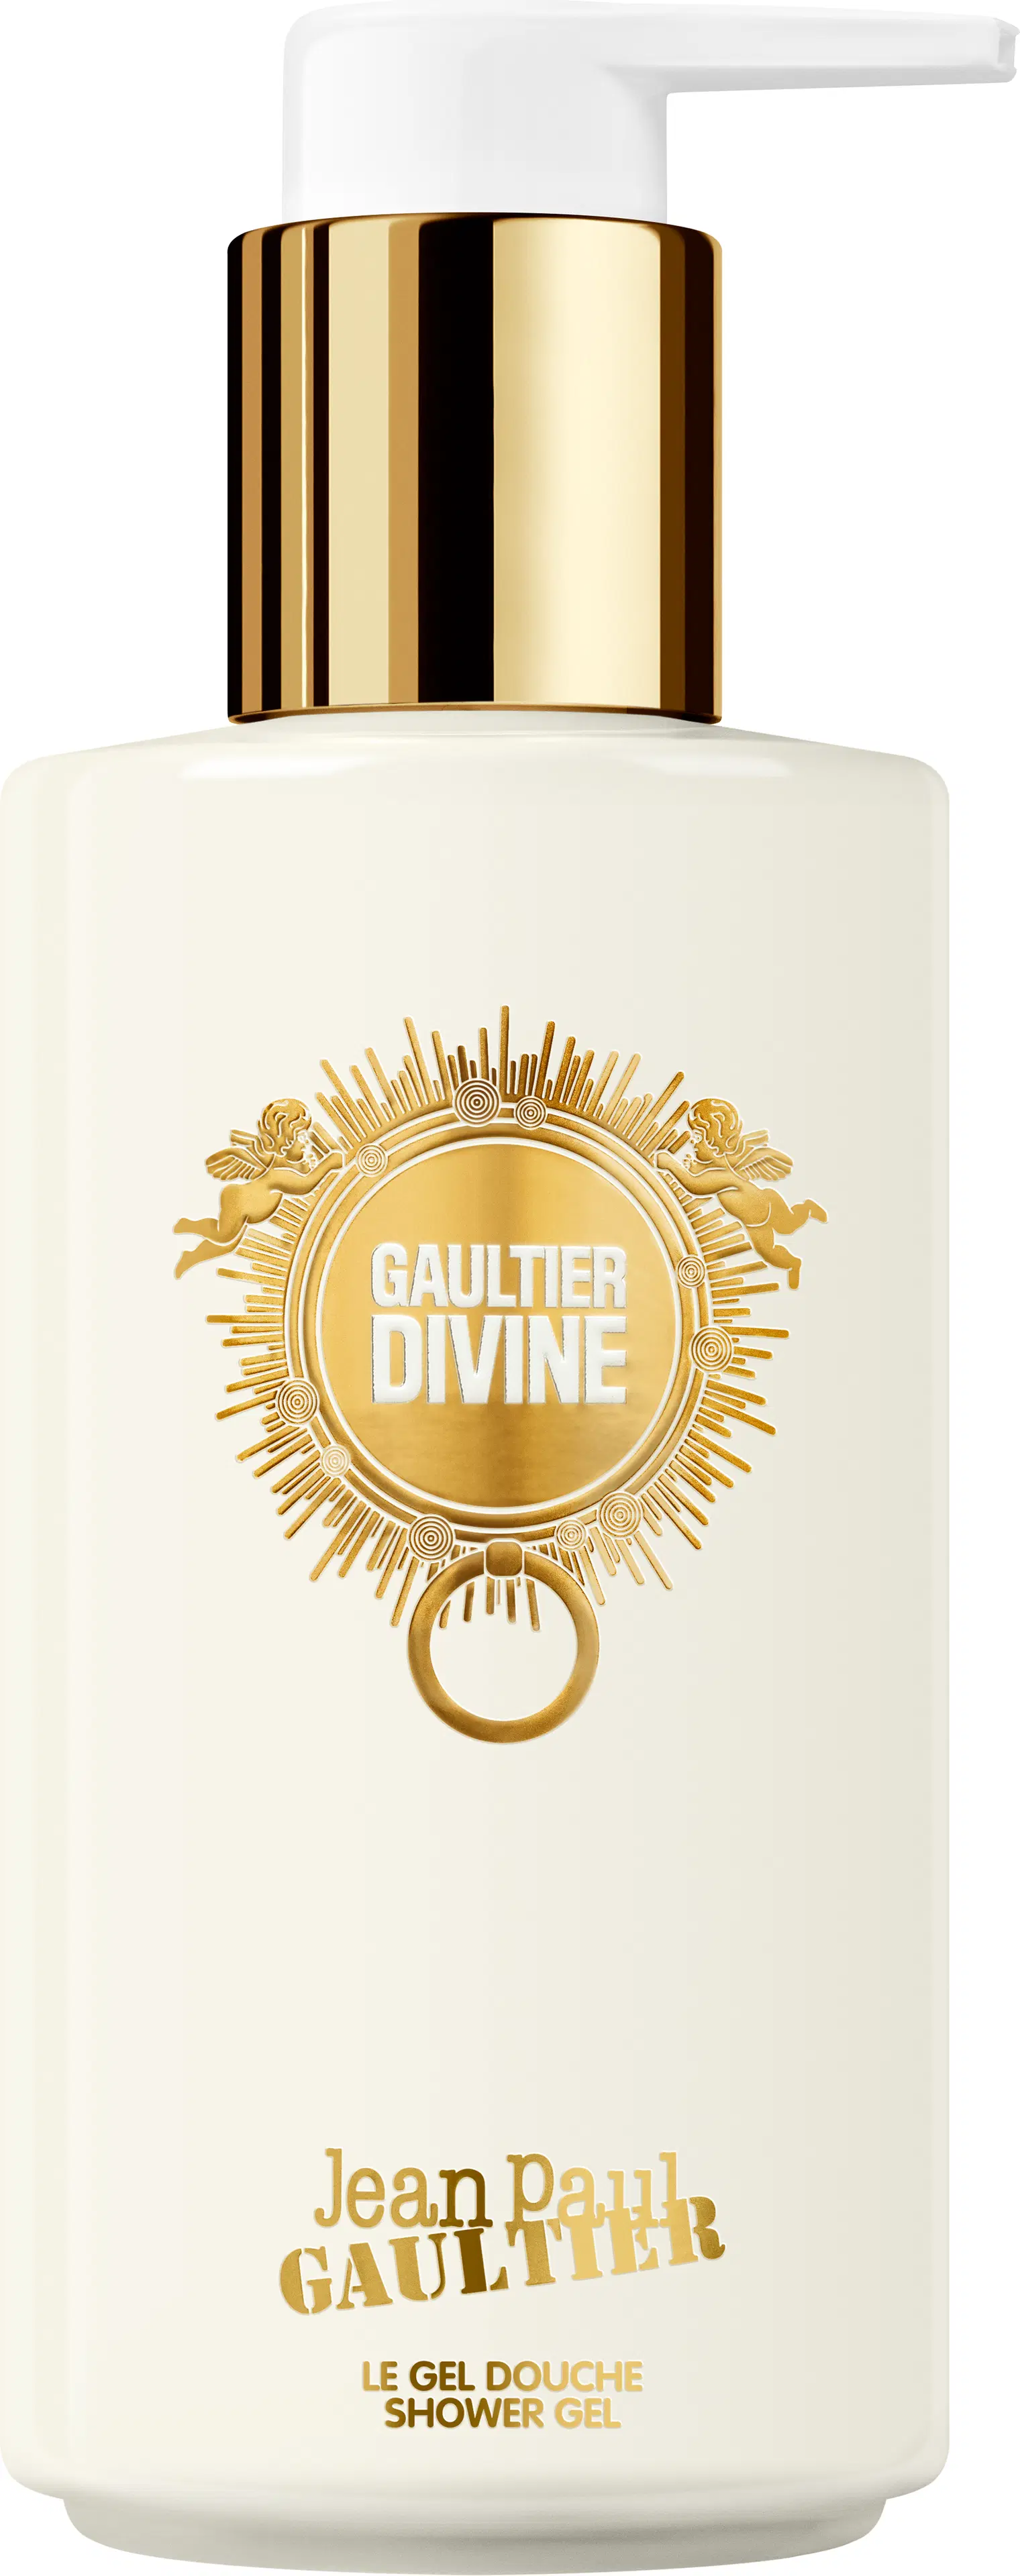 Jean Paul Gaultier - Gaultier Divine suihkugeeli 200 ml